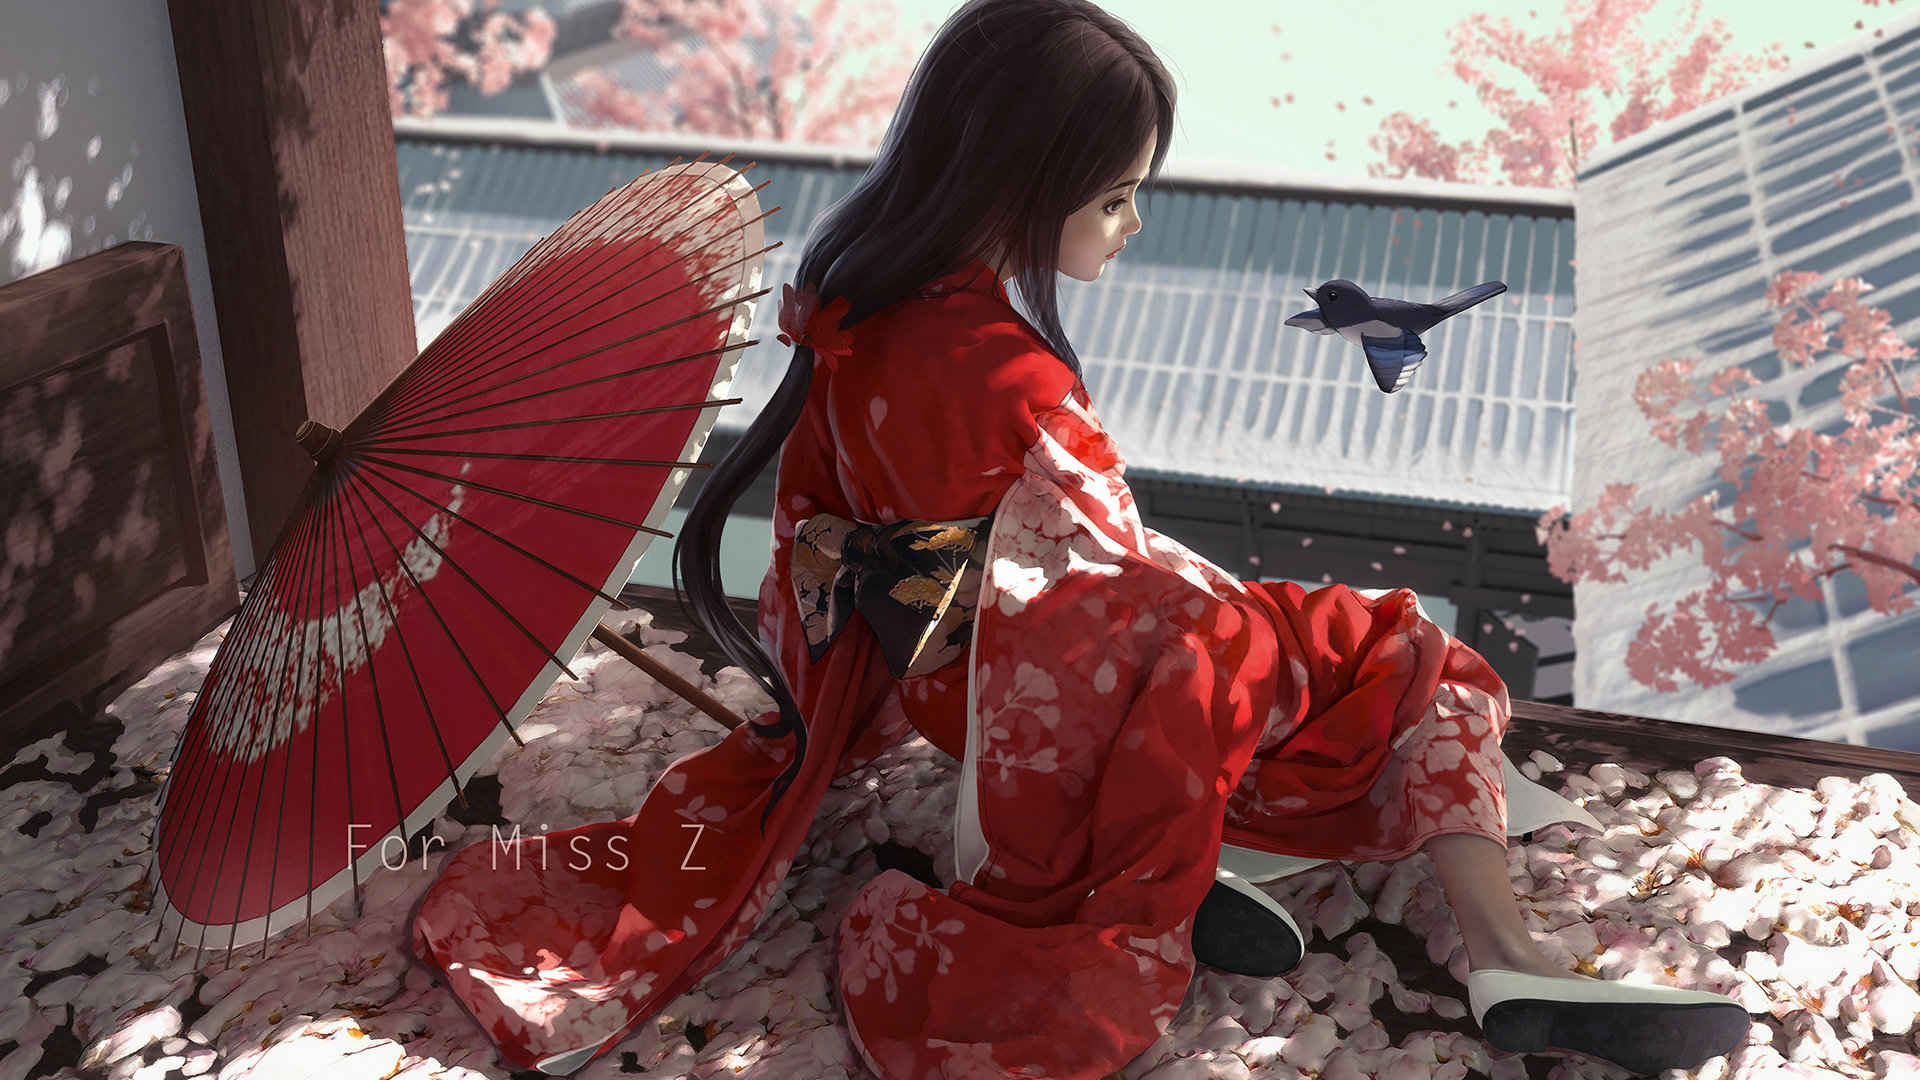 坐在樱花满地的榻榻米上穿和服的动漫少女